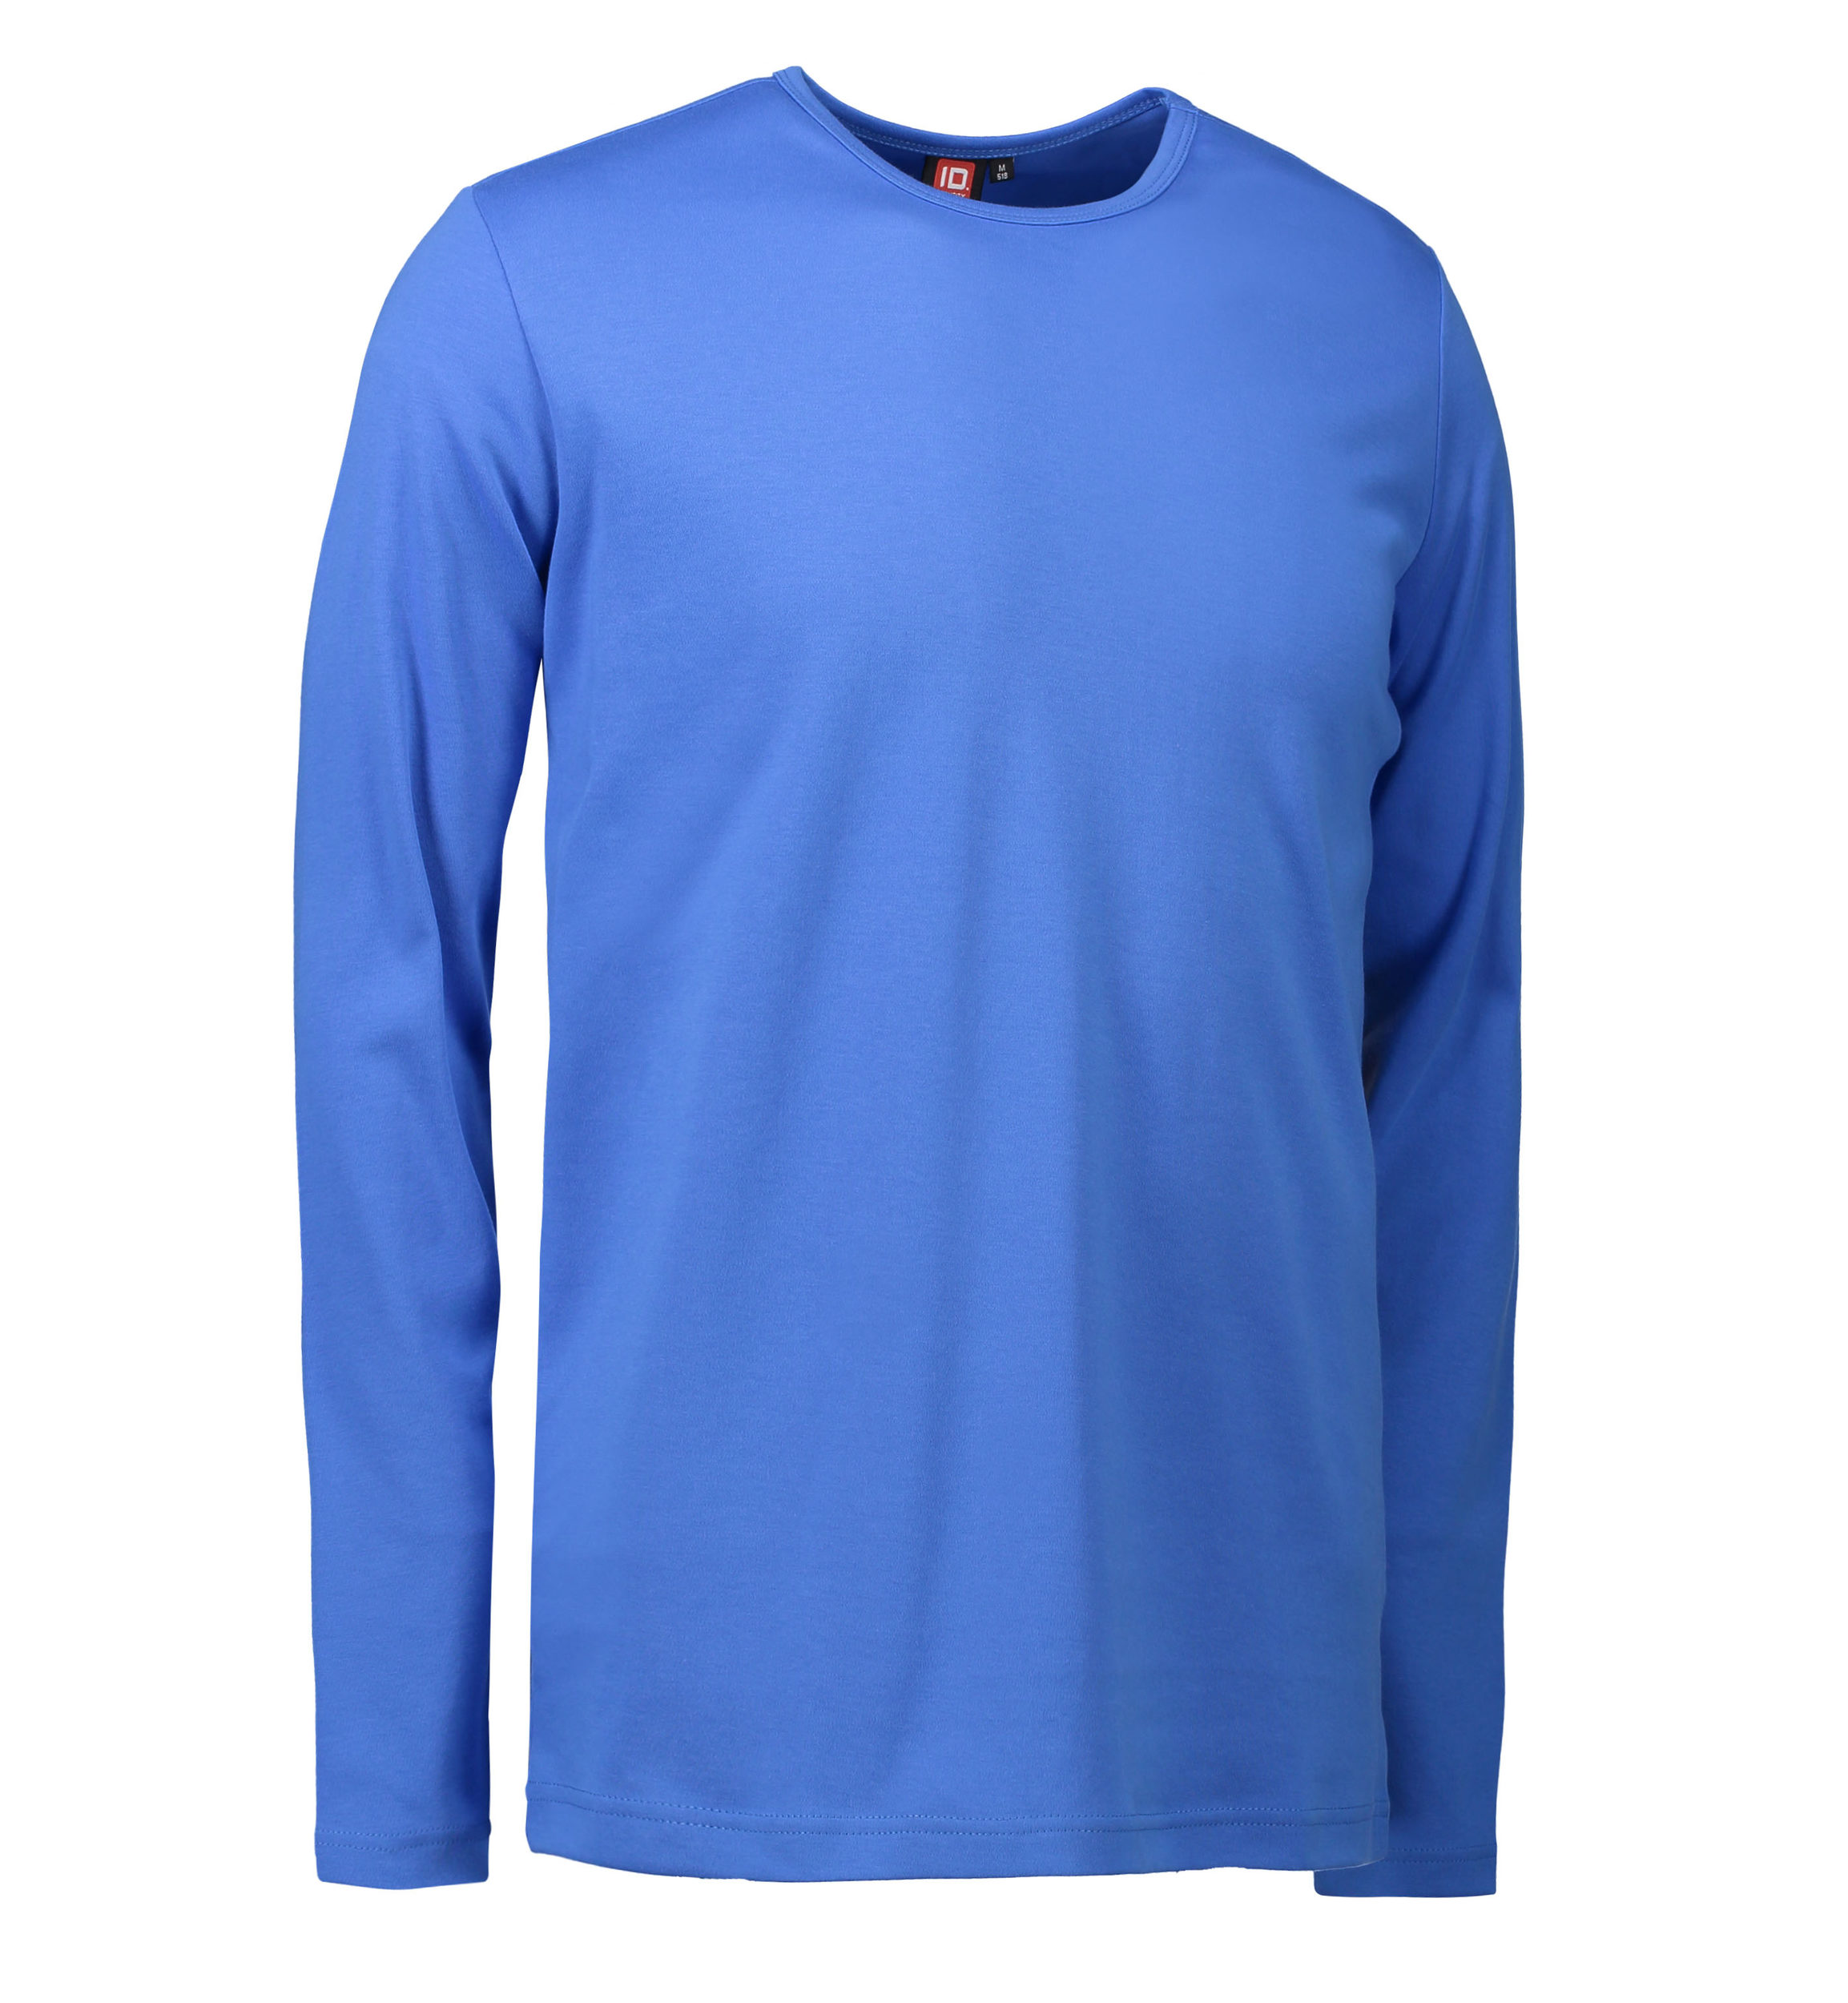 Billede af Blå langærmet t-shirt til mænd - 3XL hos Sygeplejebutikken.dk